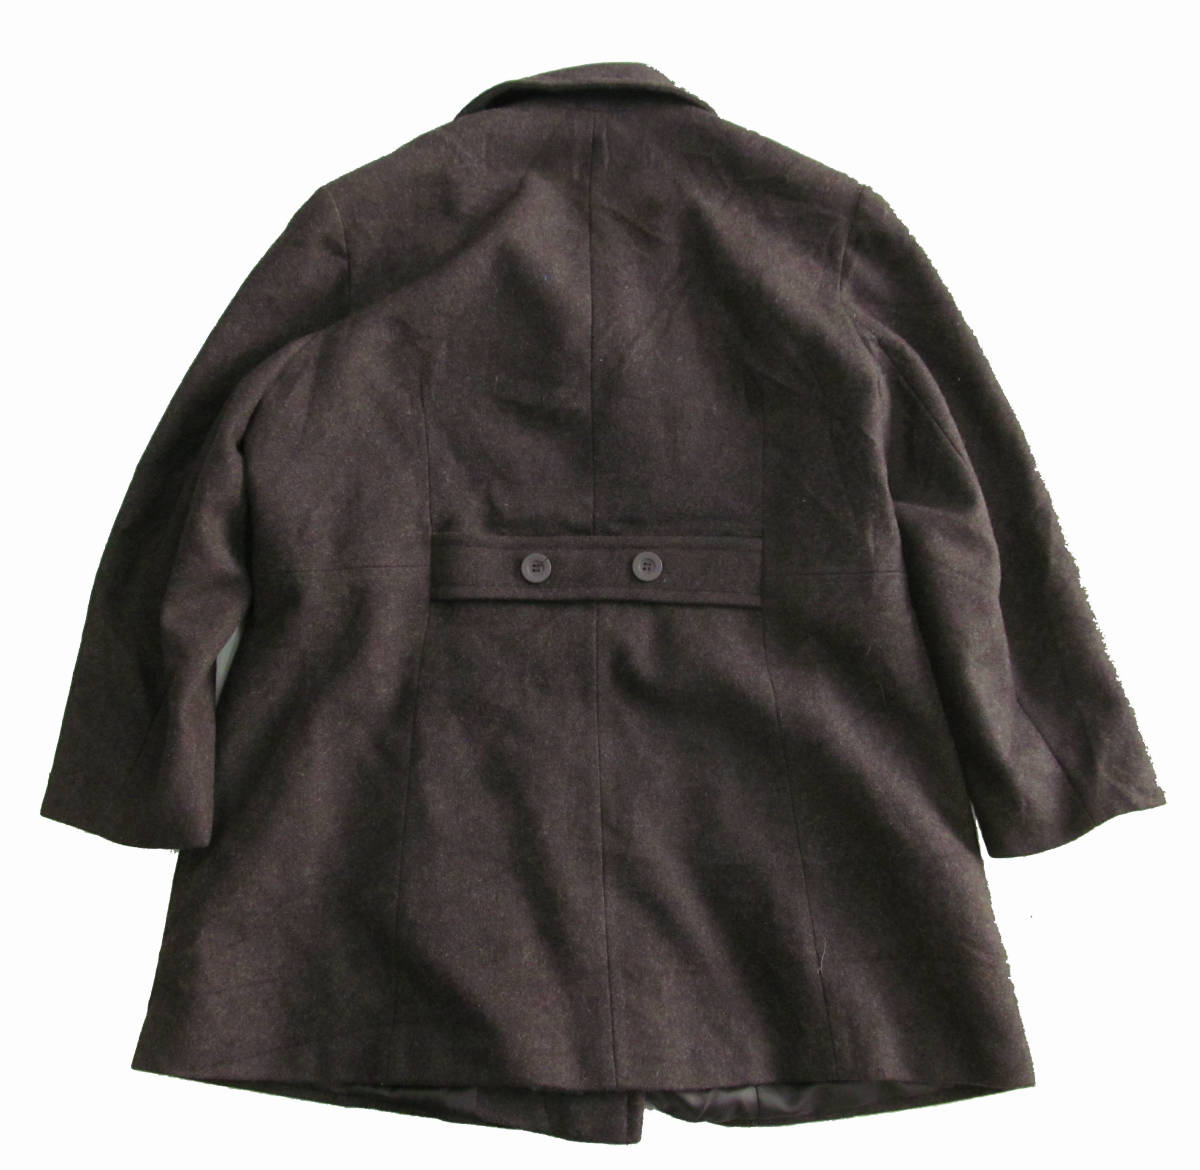 US old clothes Stephanie Mathews large size wool coat jacket pea coat pea coat lady's b8